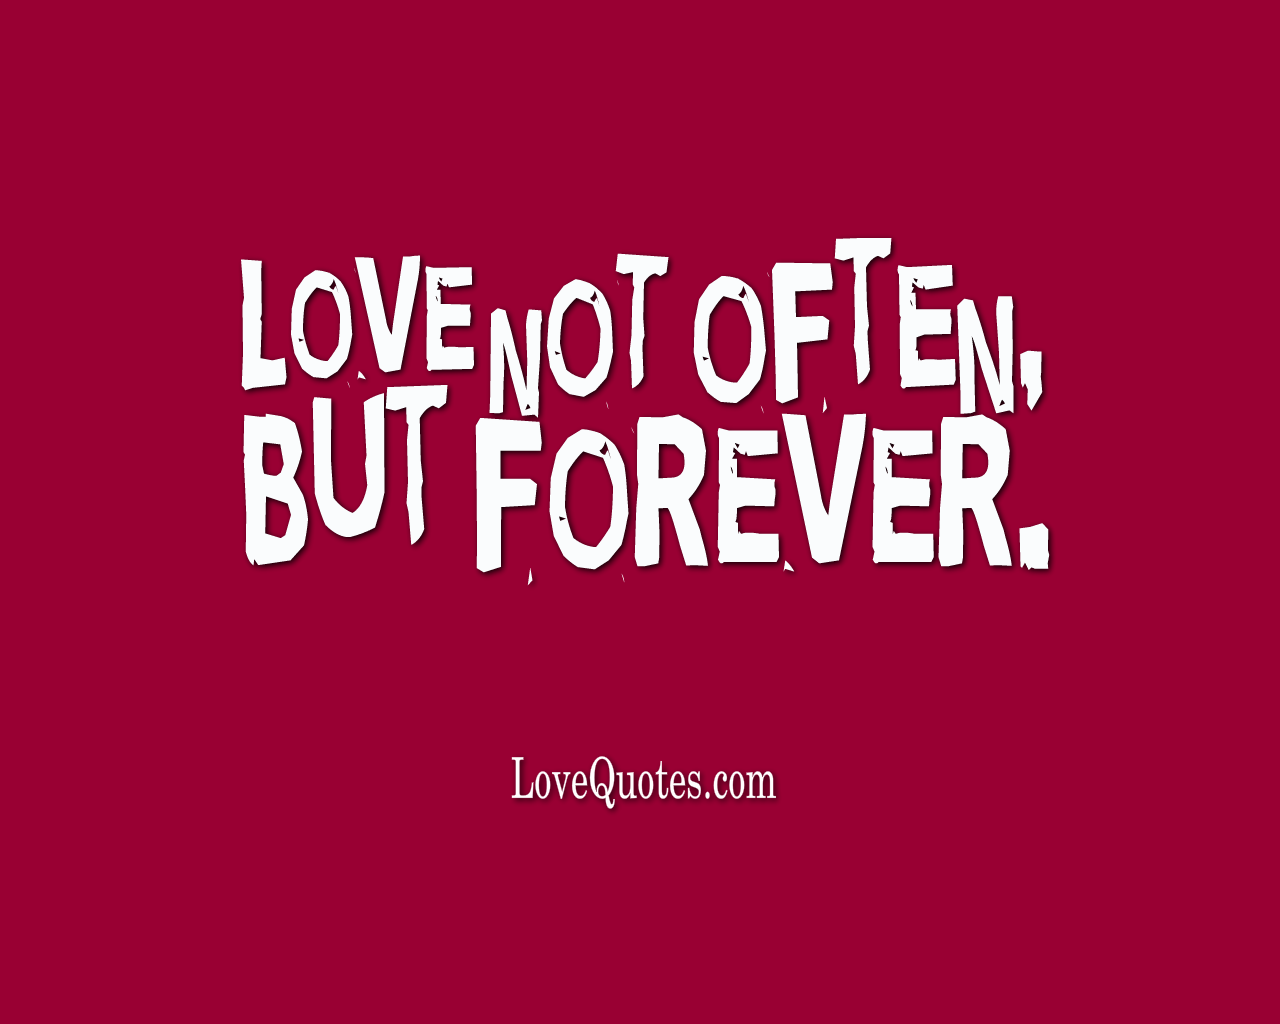 Love Not Often